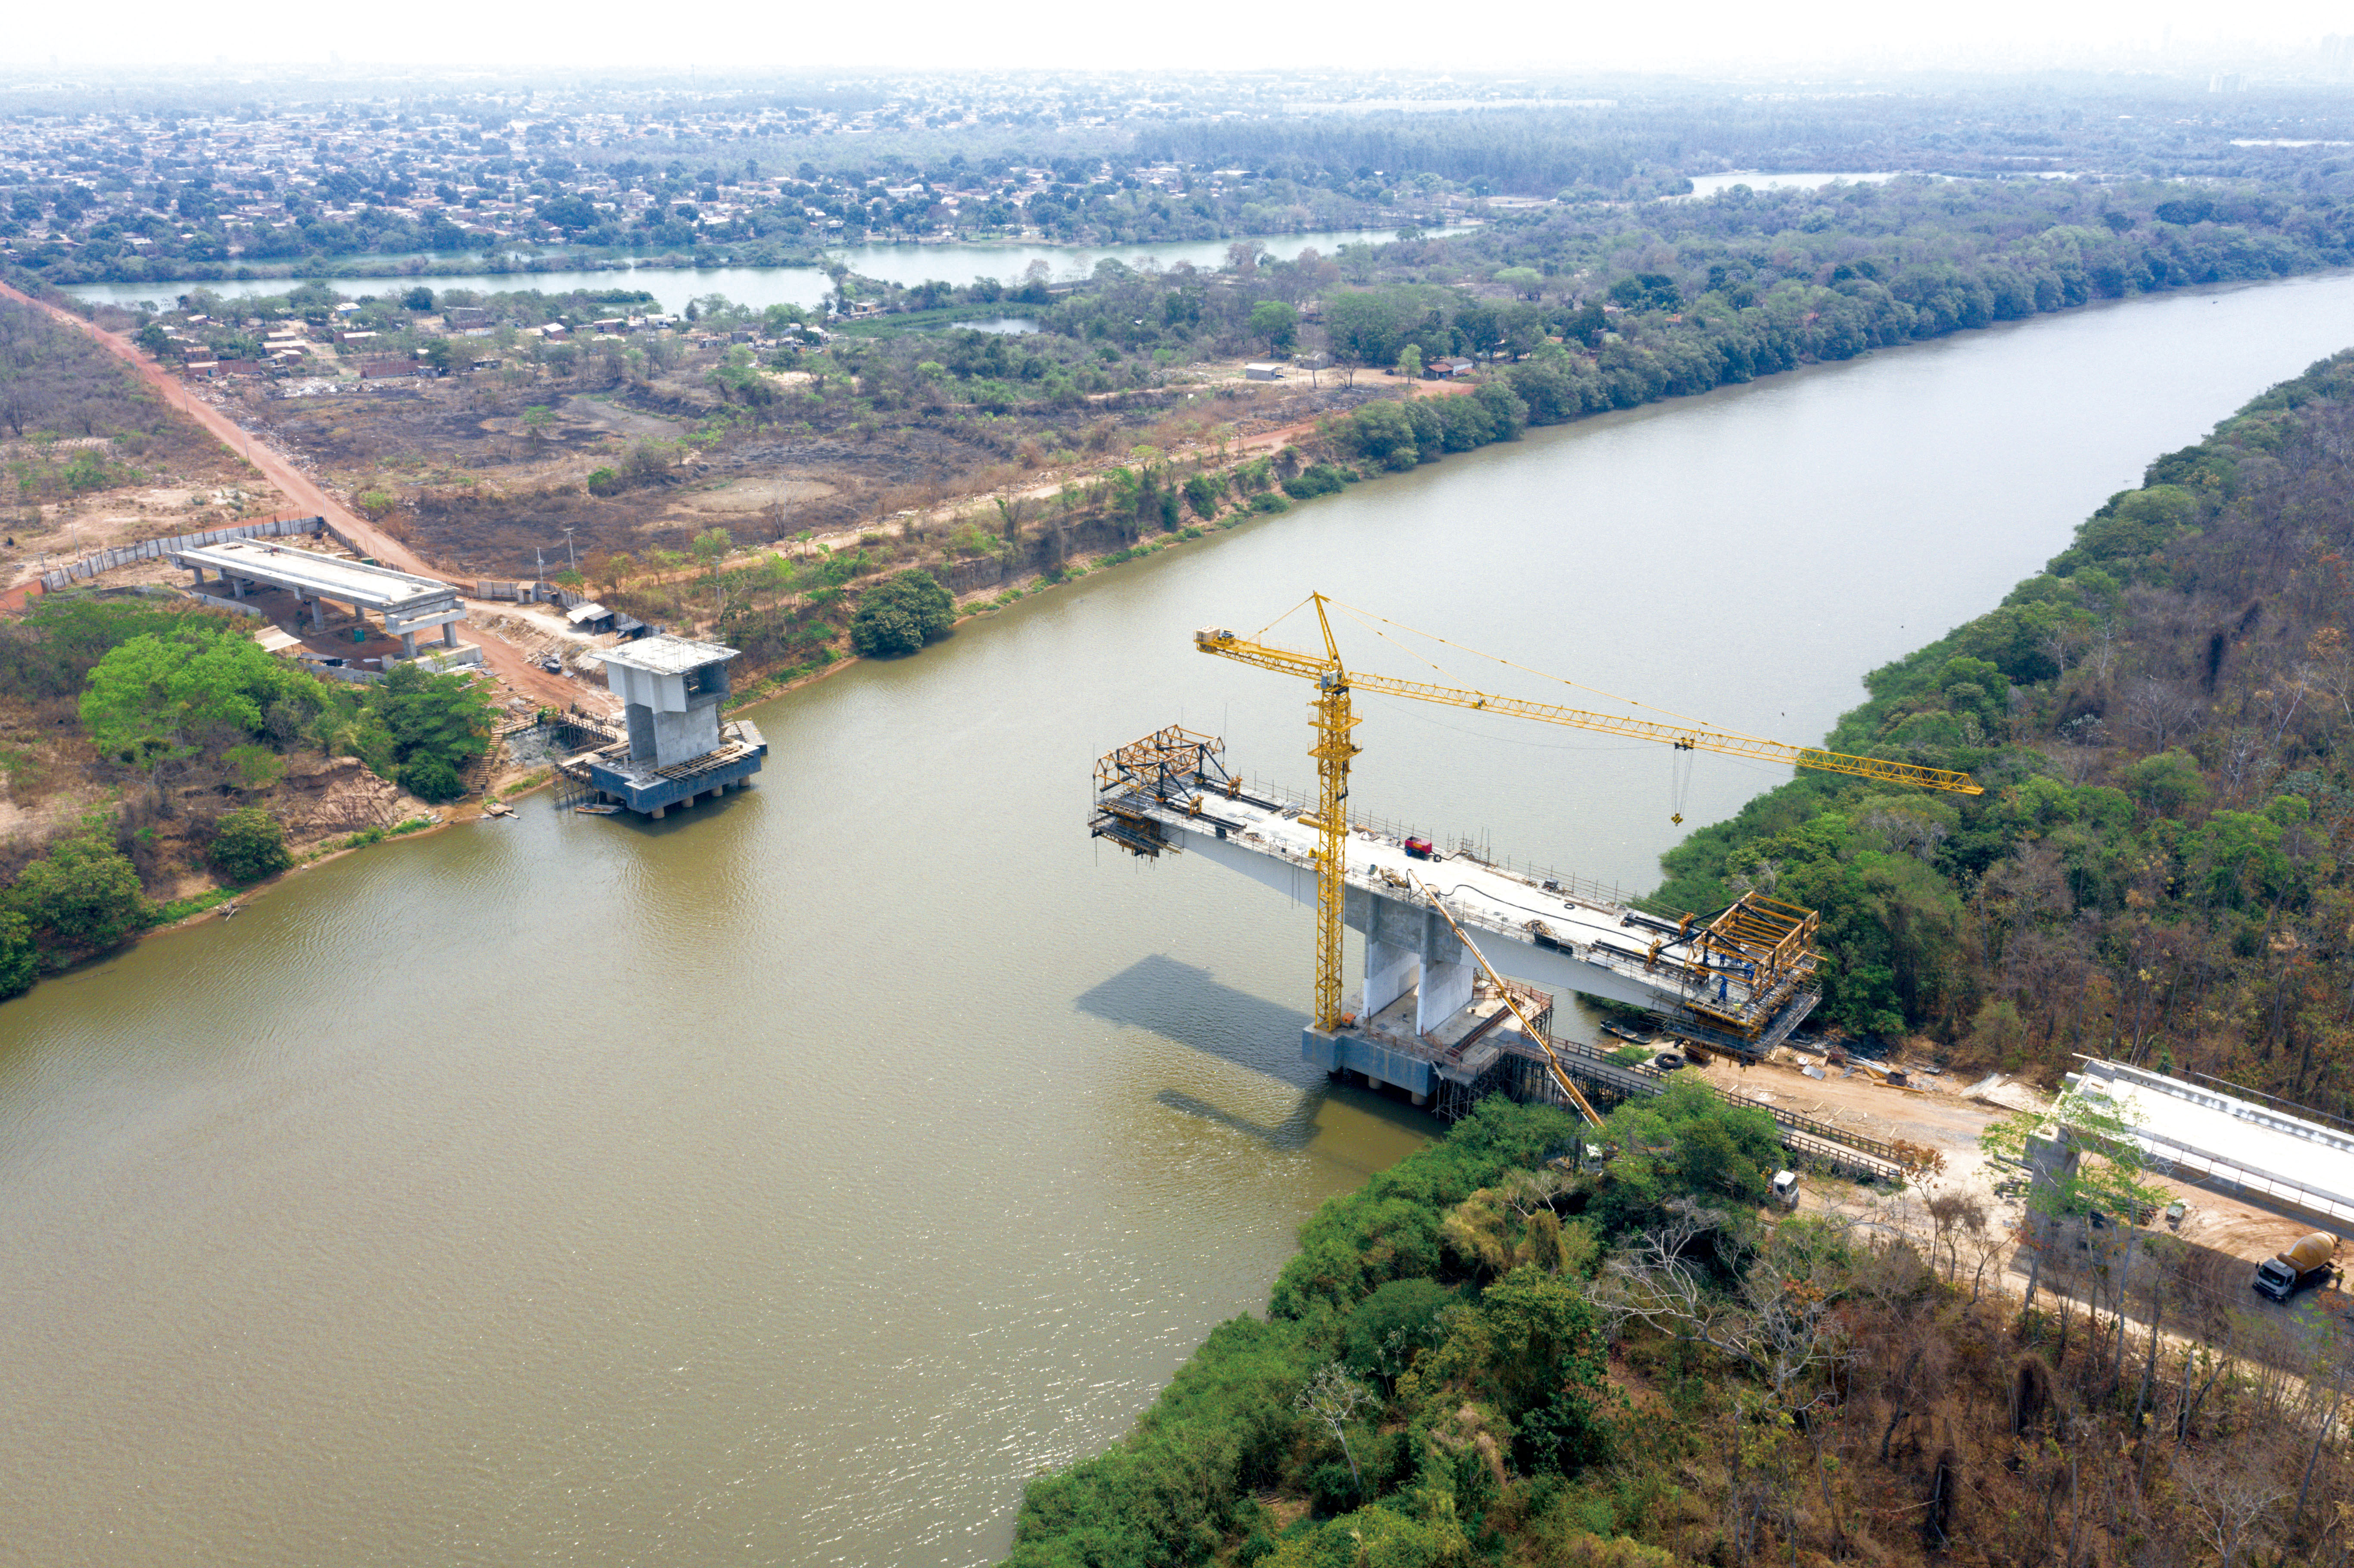 ULMA participa en el proyecto del puente sobre el rio Cuiabá, en Brasil